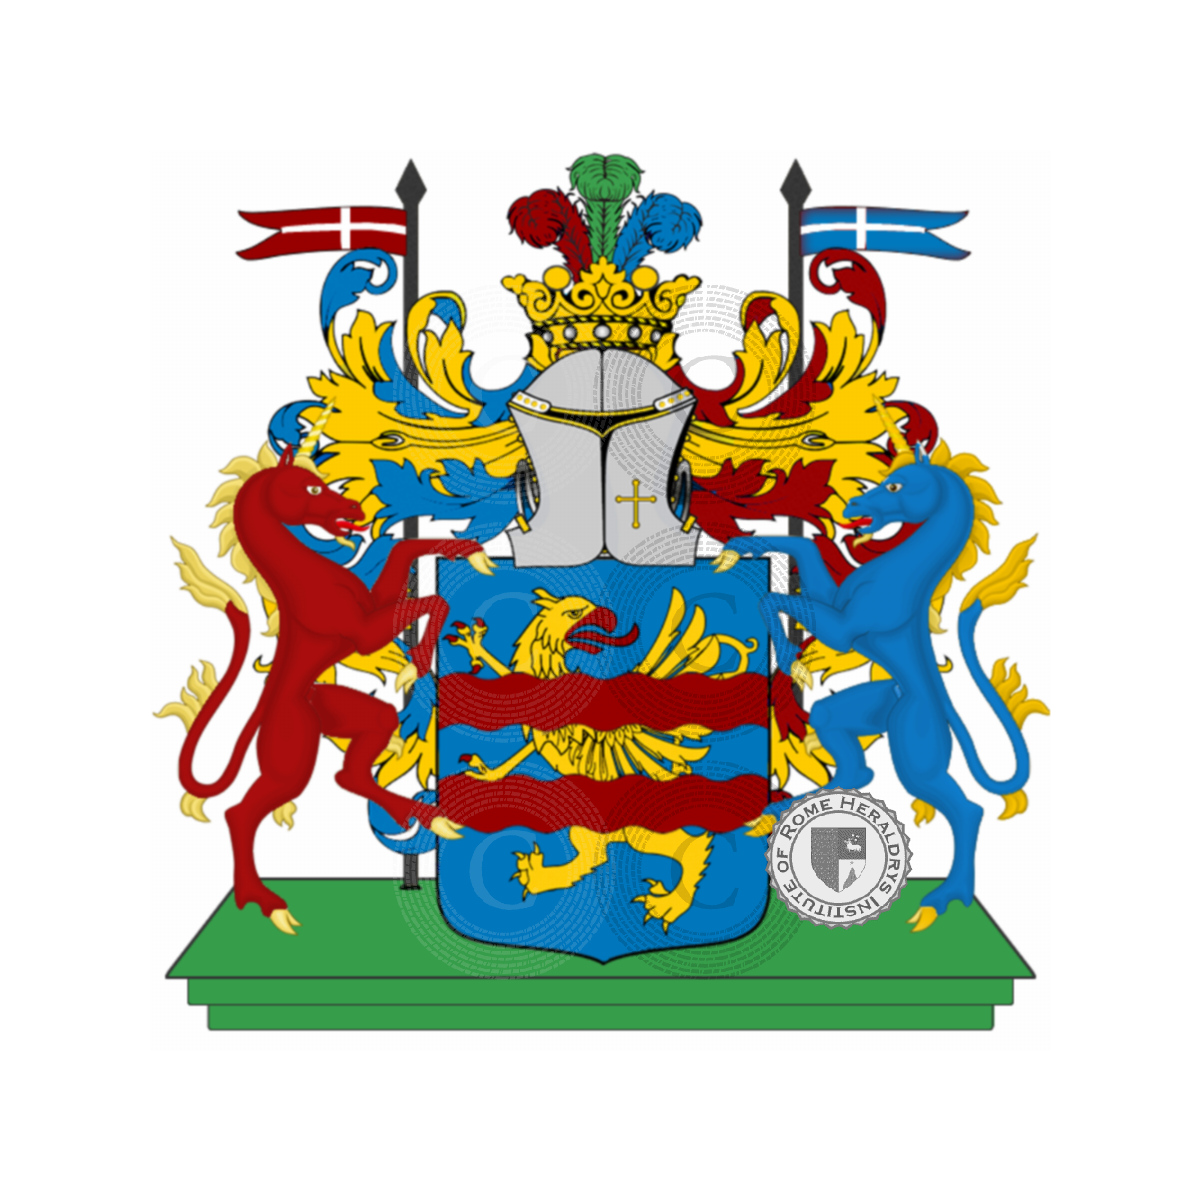 Coat of arms of familycampidori